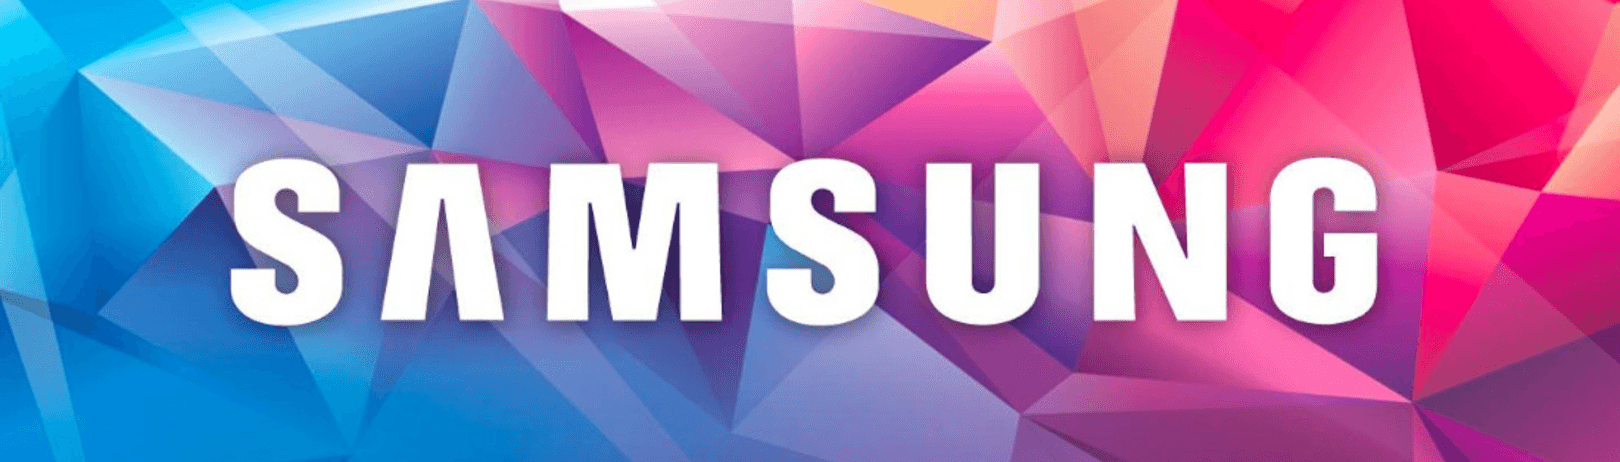 Mobilné telefóny Samsung: 7 dôvodov, prečo sú stále tak obľúbené